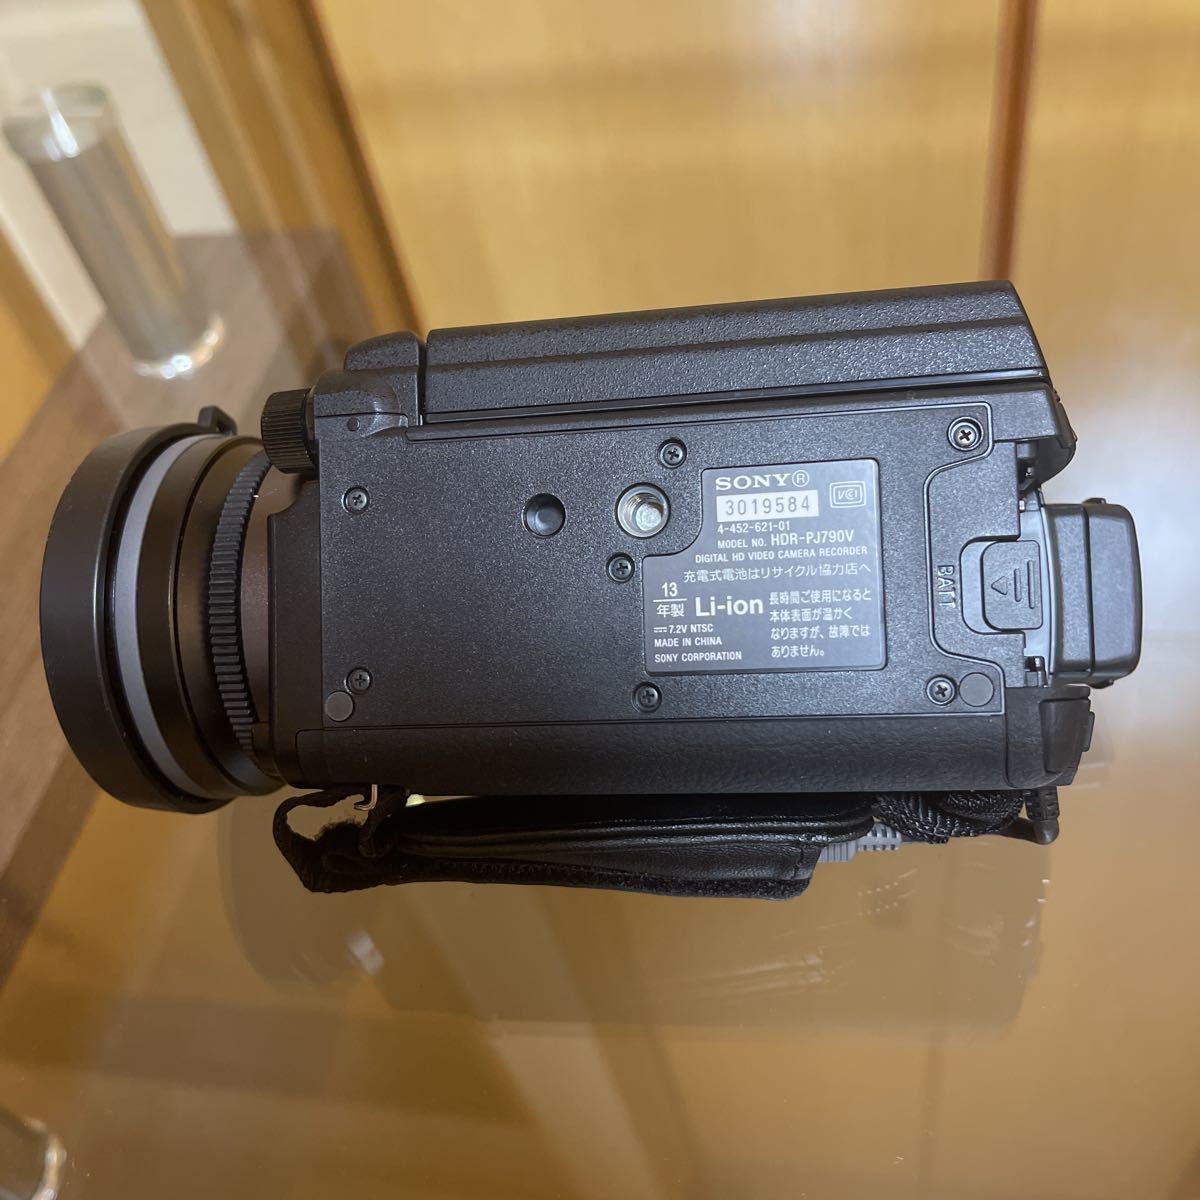 極上品 使用10時間以下 付属品多数 未使用品含む Handycam HDR-PJ790V （ブラック）ビデオカメラ SONY 